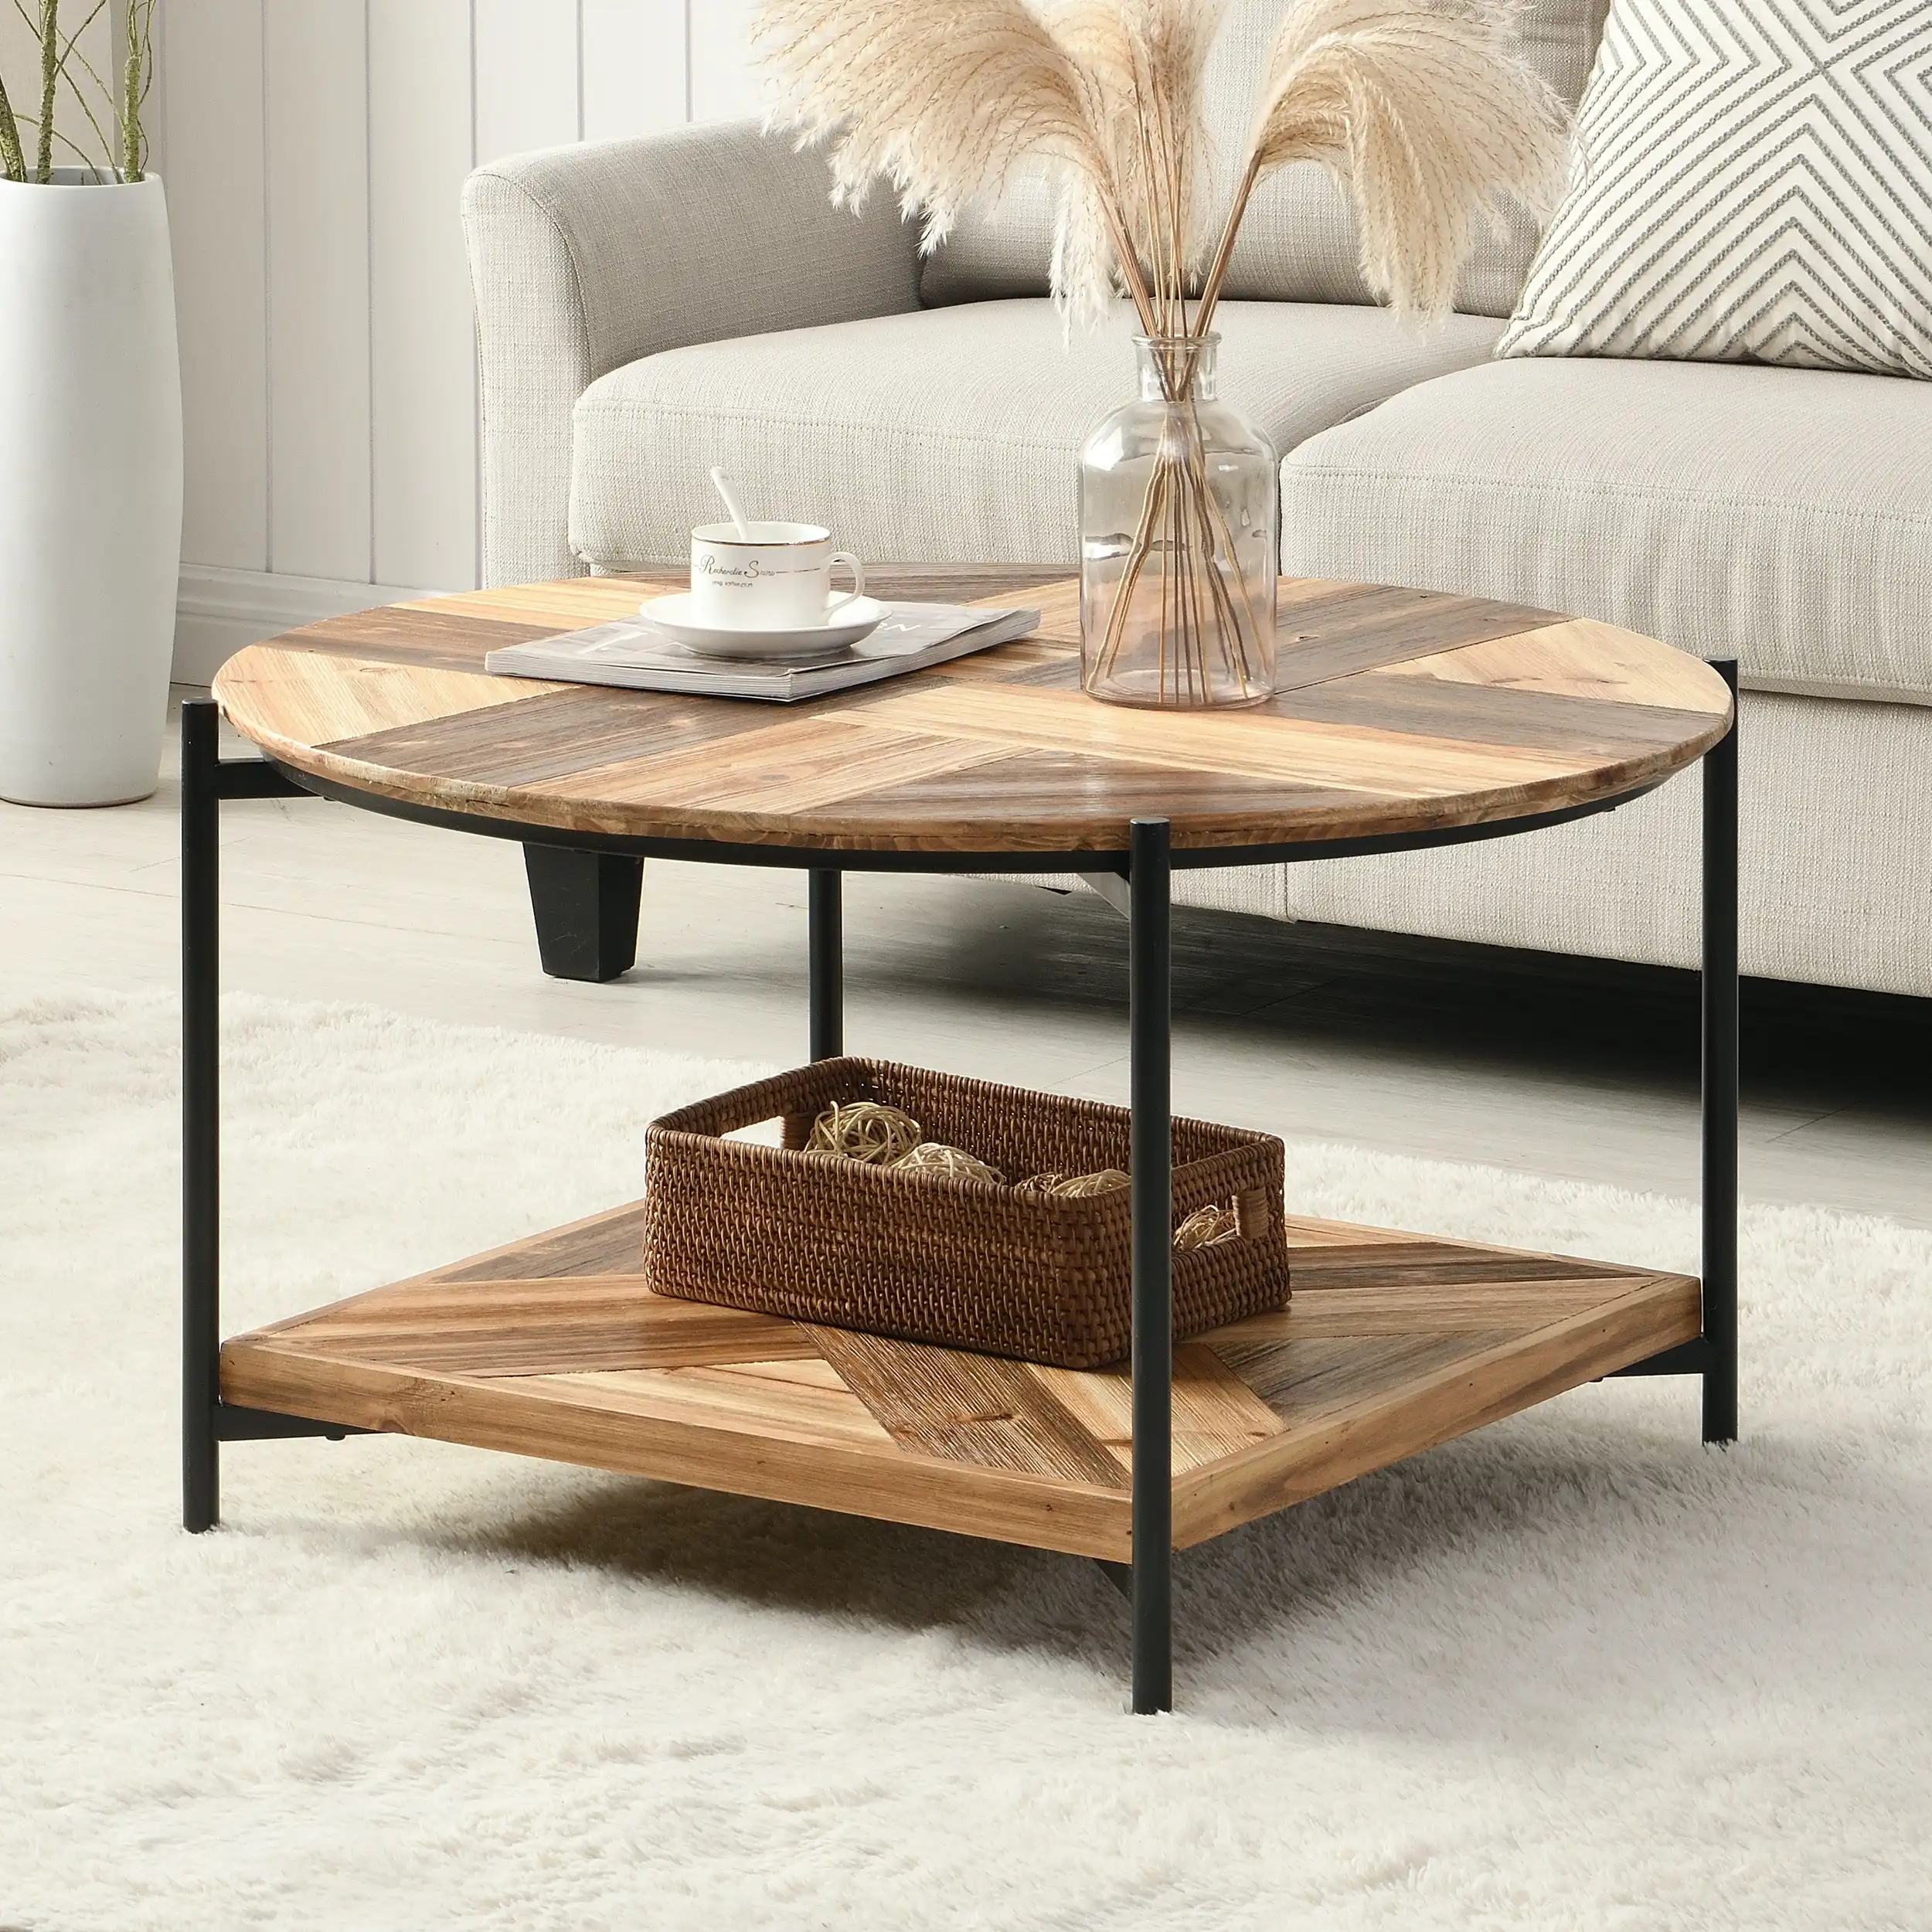 IHOMDEC 2-Tier Industrial Wooden Coffee Table with 4 metal legs Brown